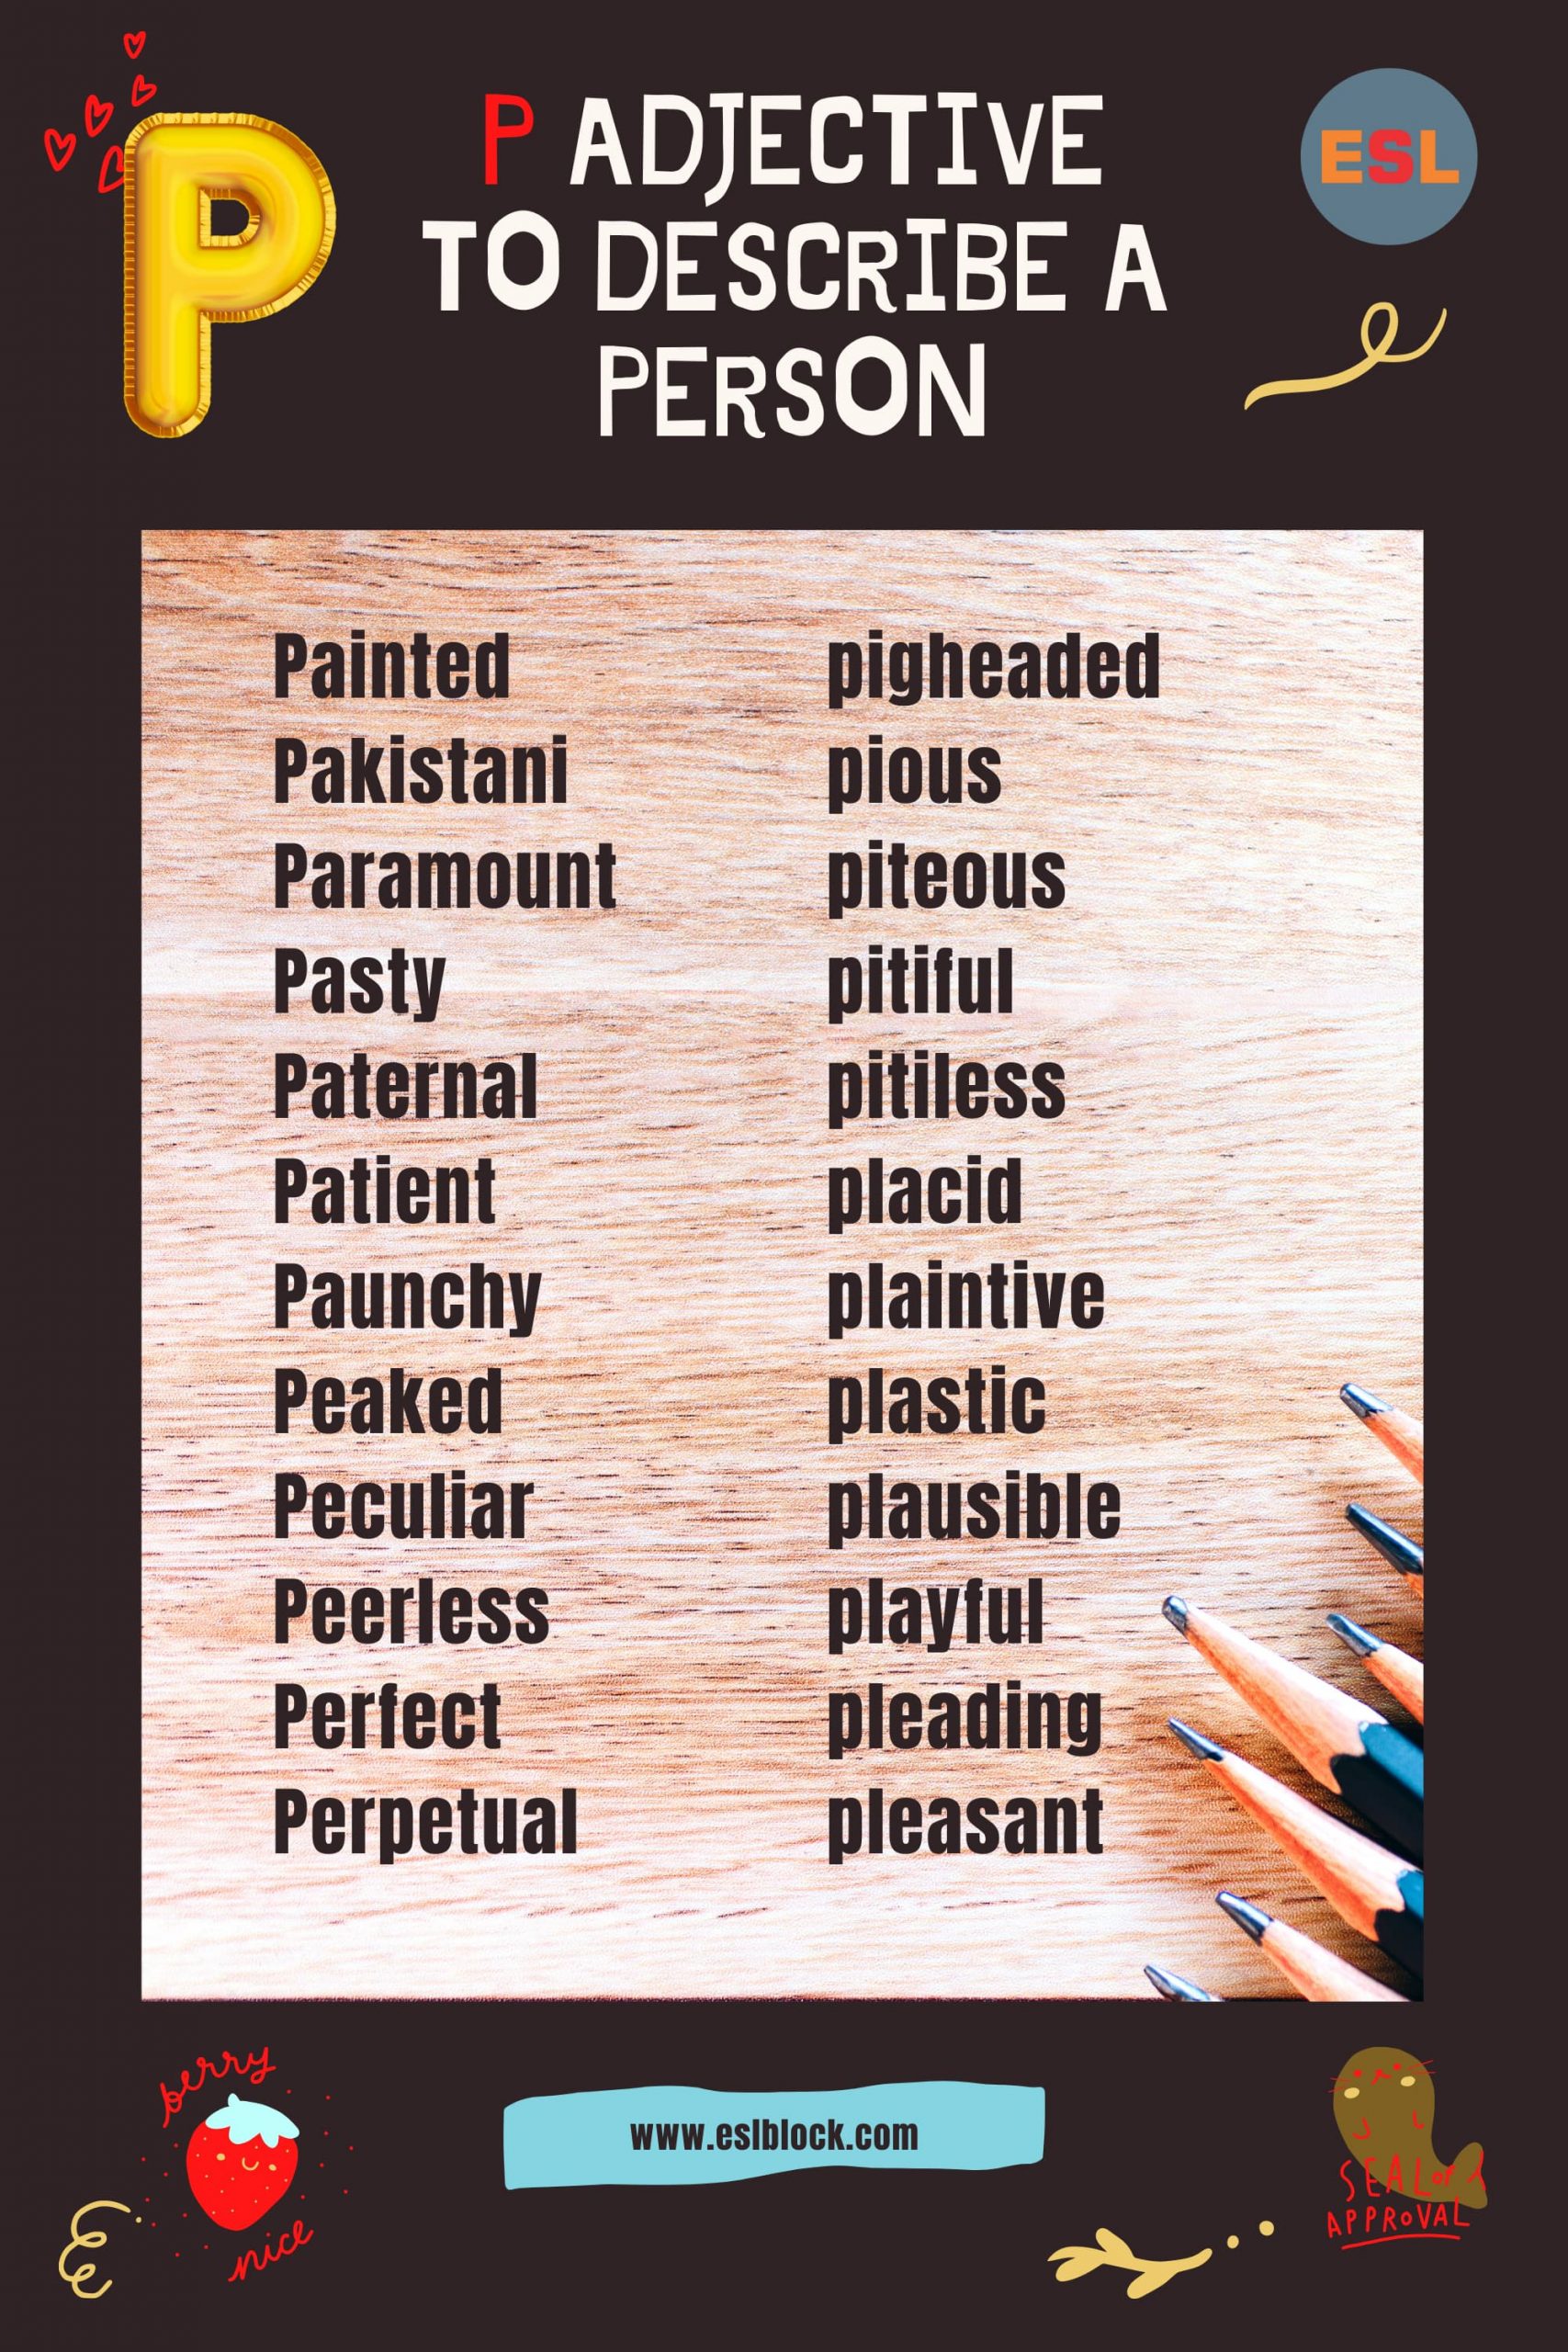 A-Z Adjectives, Adjective Words, Adjectives, Adjectives to describe a person, P Adjectives to Describe a Person, P Positive Adjectives to Describe a Person, P Words, Positive Adjectives to Describe a Person, Vocabulary, Words That Describe a Person